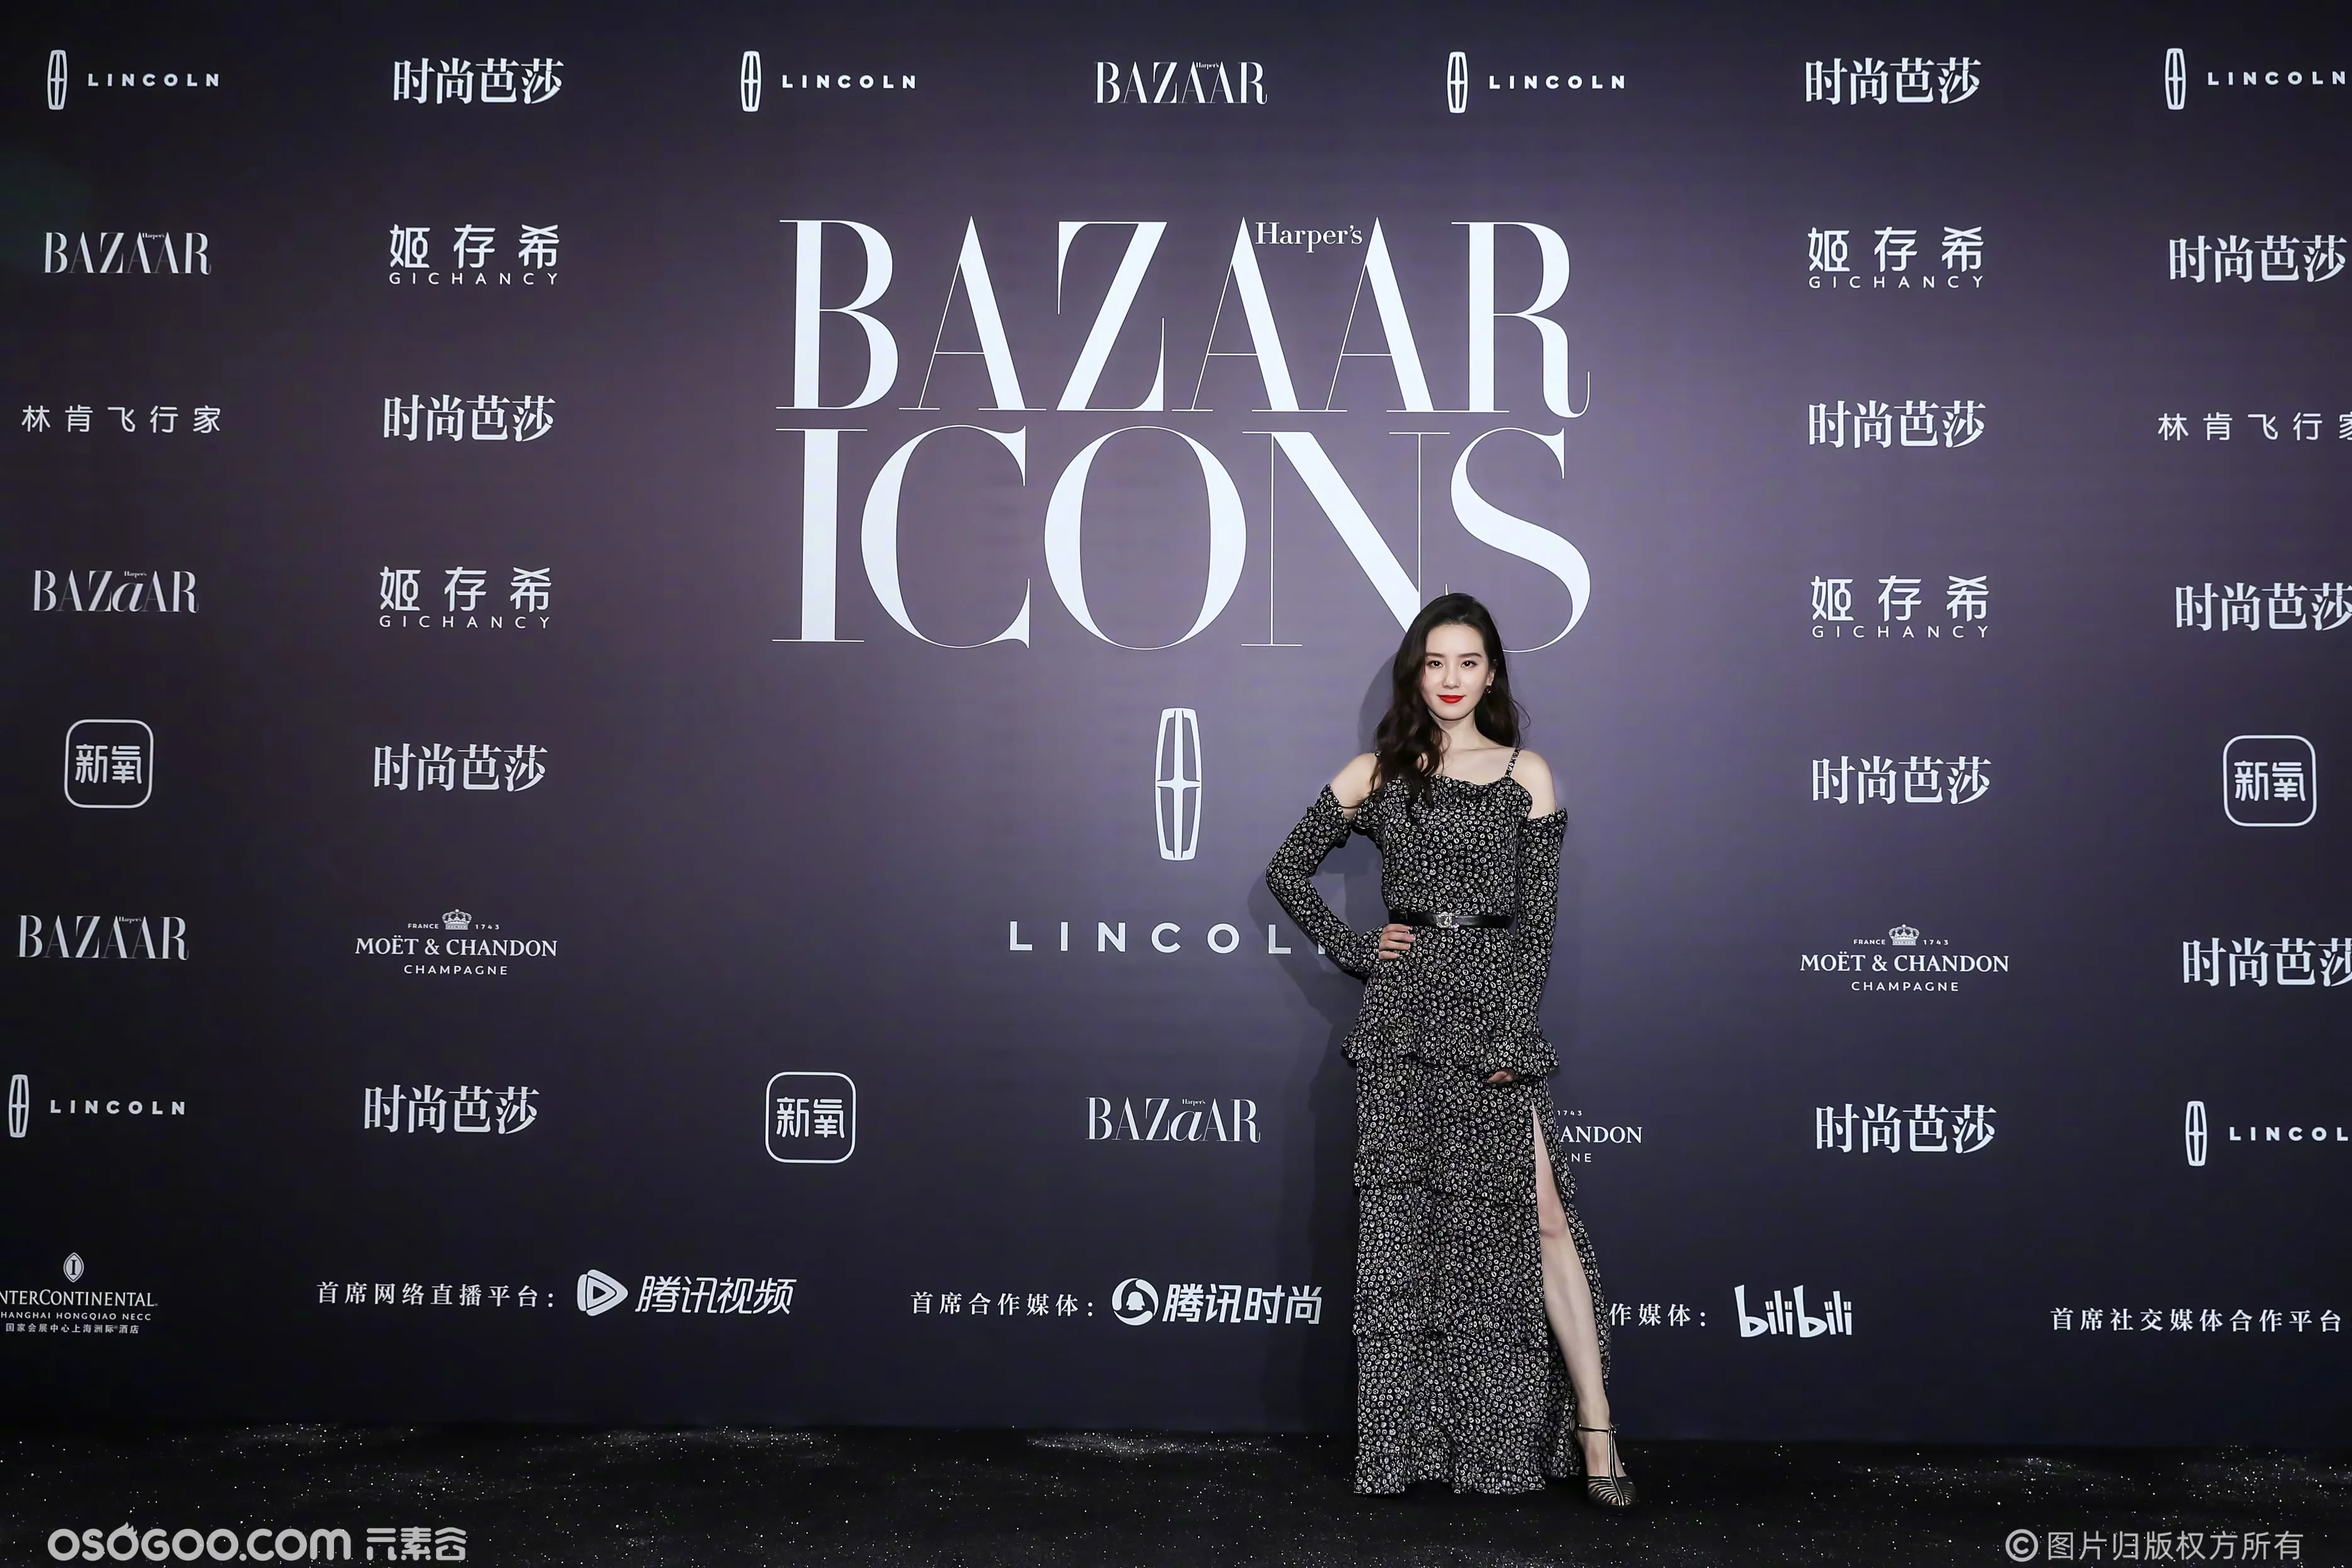 [消息]赵丽颖获得时尚芭莎“年度人气ICON”荣誉 派对群星主题大片公开——IDOL新闻